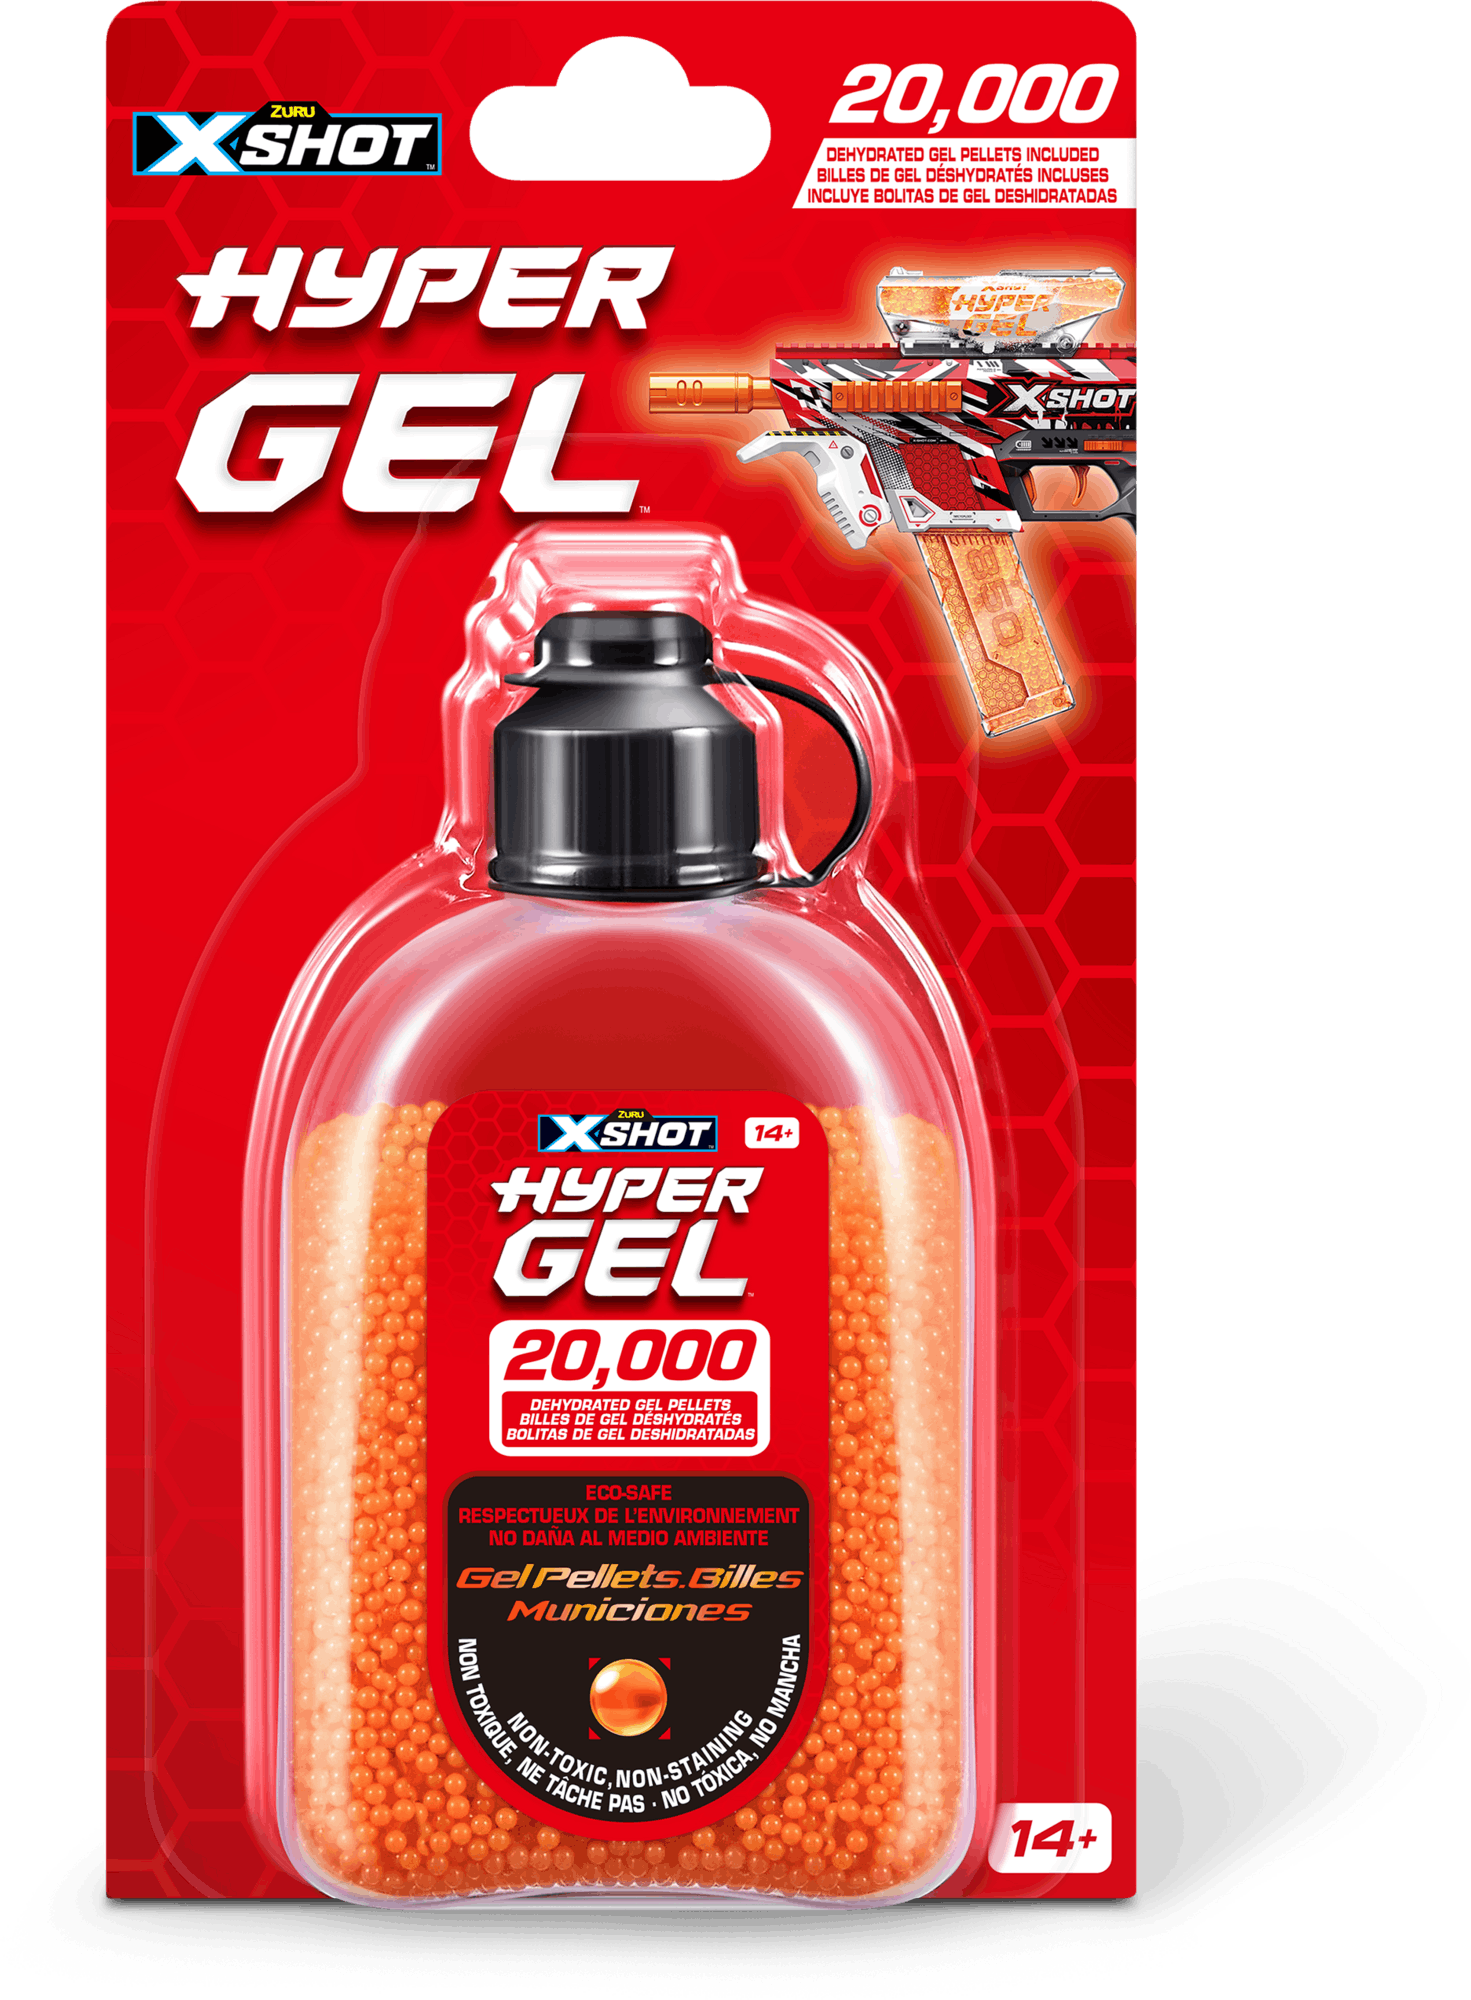 X-shot Hyper Gel Refill 20000 Gel Pellets